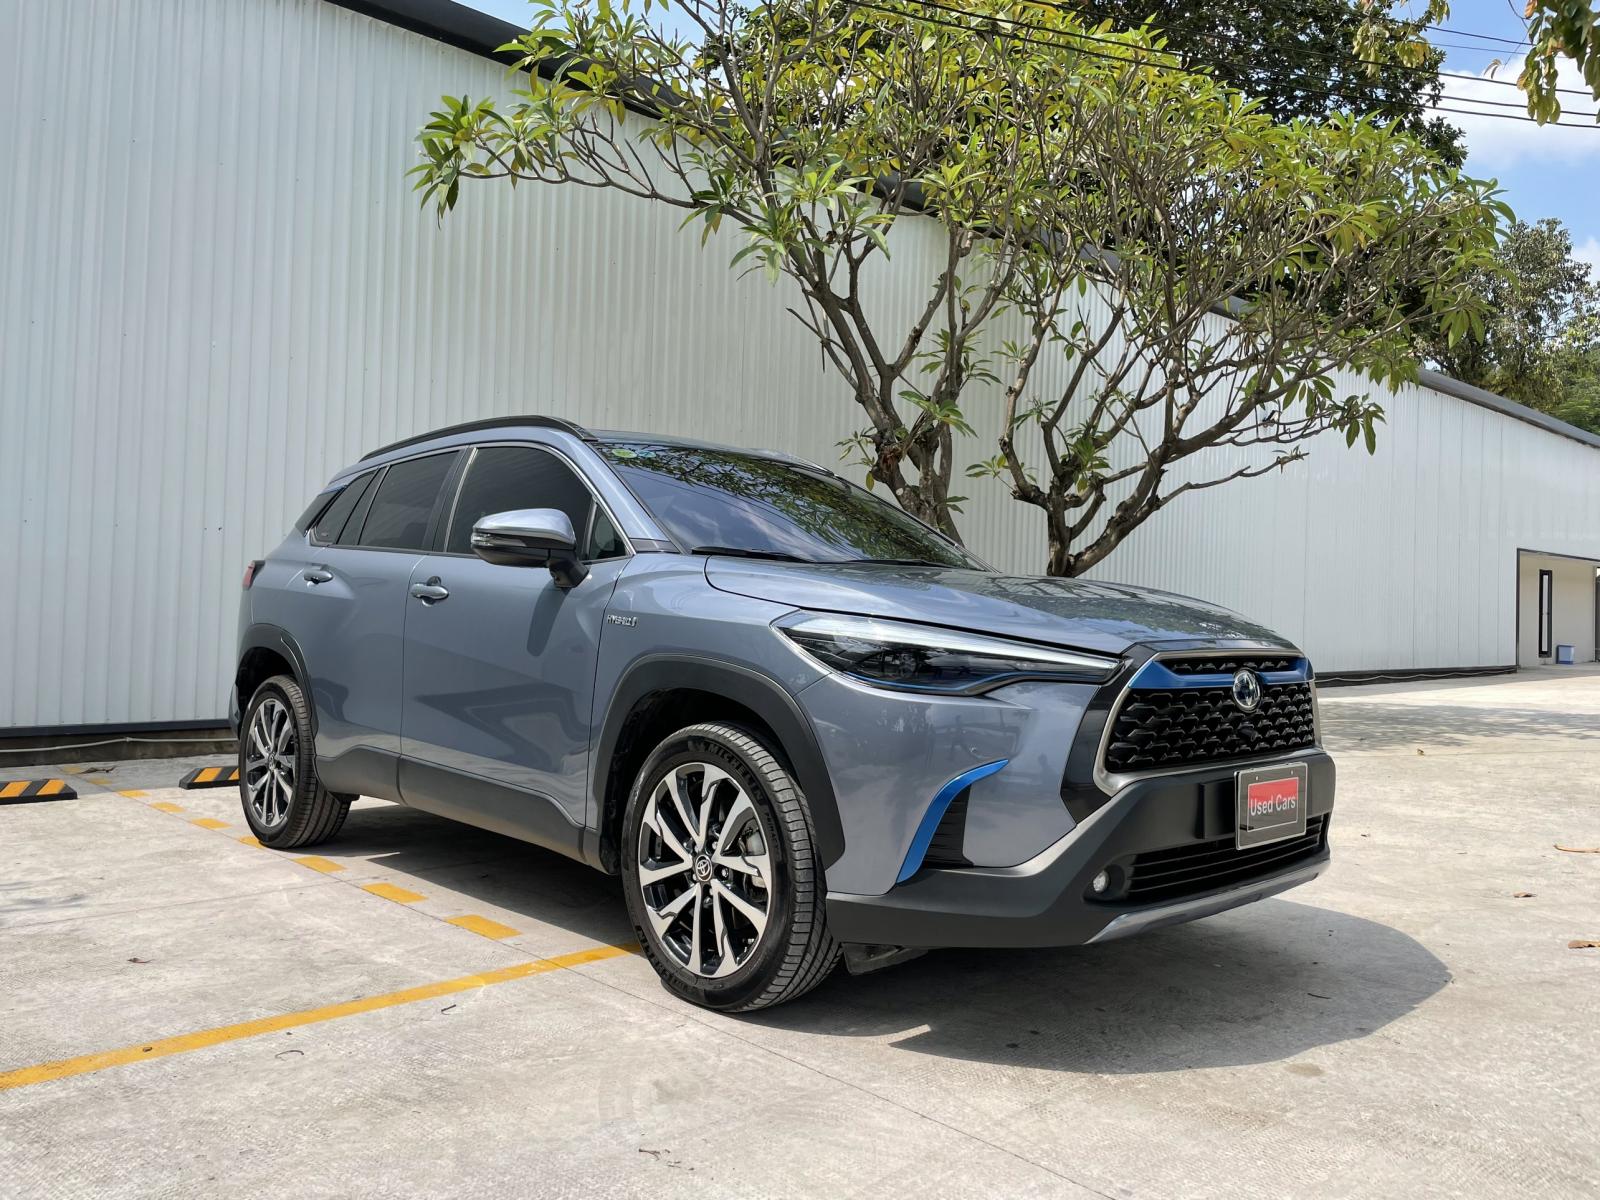 Toyota Toyota khác 1.8HV 2021 - Cross HV bản xăng điện 2021. Xe rất đẹp, chất như xe mới